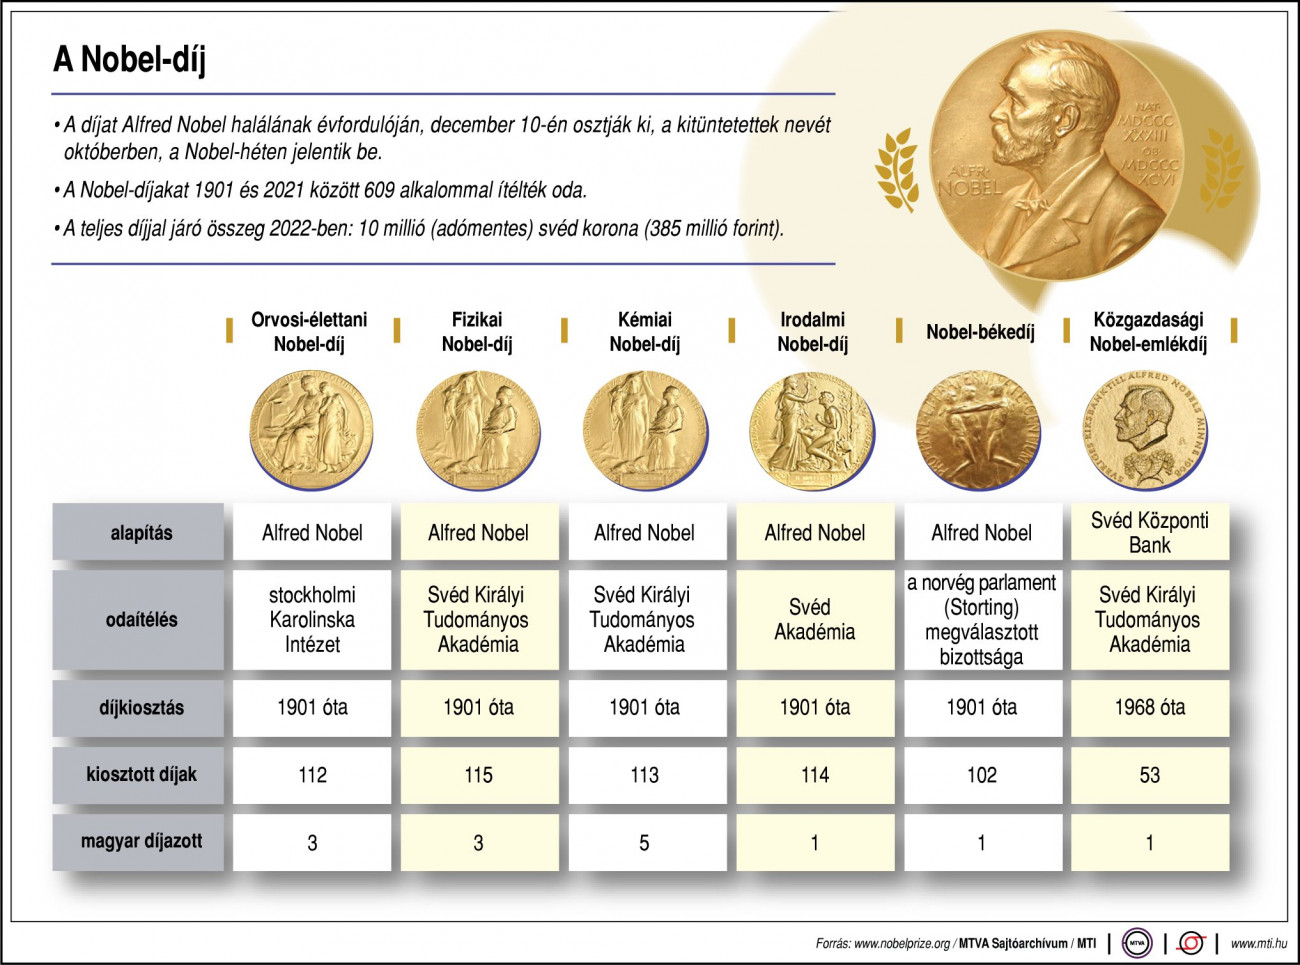 A díjat Alfred Nobel halálának évfordulóján, december 10-én osztják ki, a kitüntetettek nevét októberben, a Nobel-héten jelentik be. A Nobel-díjakat 1901 és 2021 között 609 alkalommal ítélték oda. A teljes díjjal járó összeg 2022-ben: 10 millió svéd korona (385 millió forint). magyar díjazott, kiosztott díjak, díjkiosztás, odaítélés, alapítás